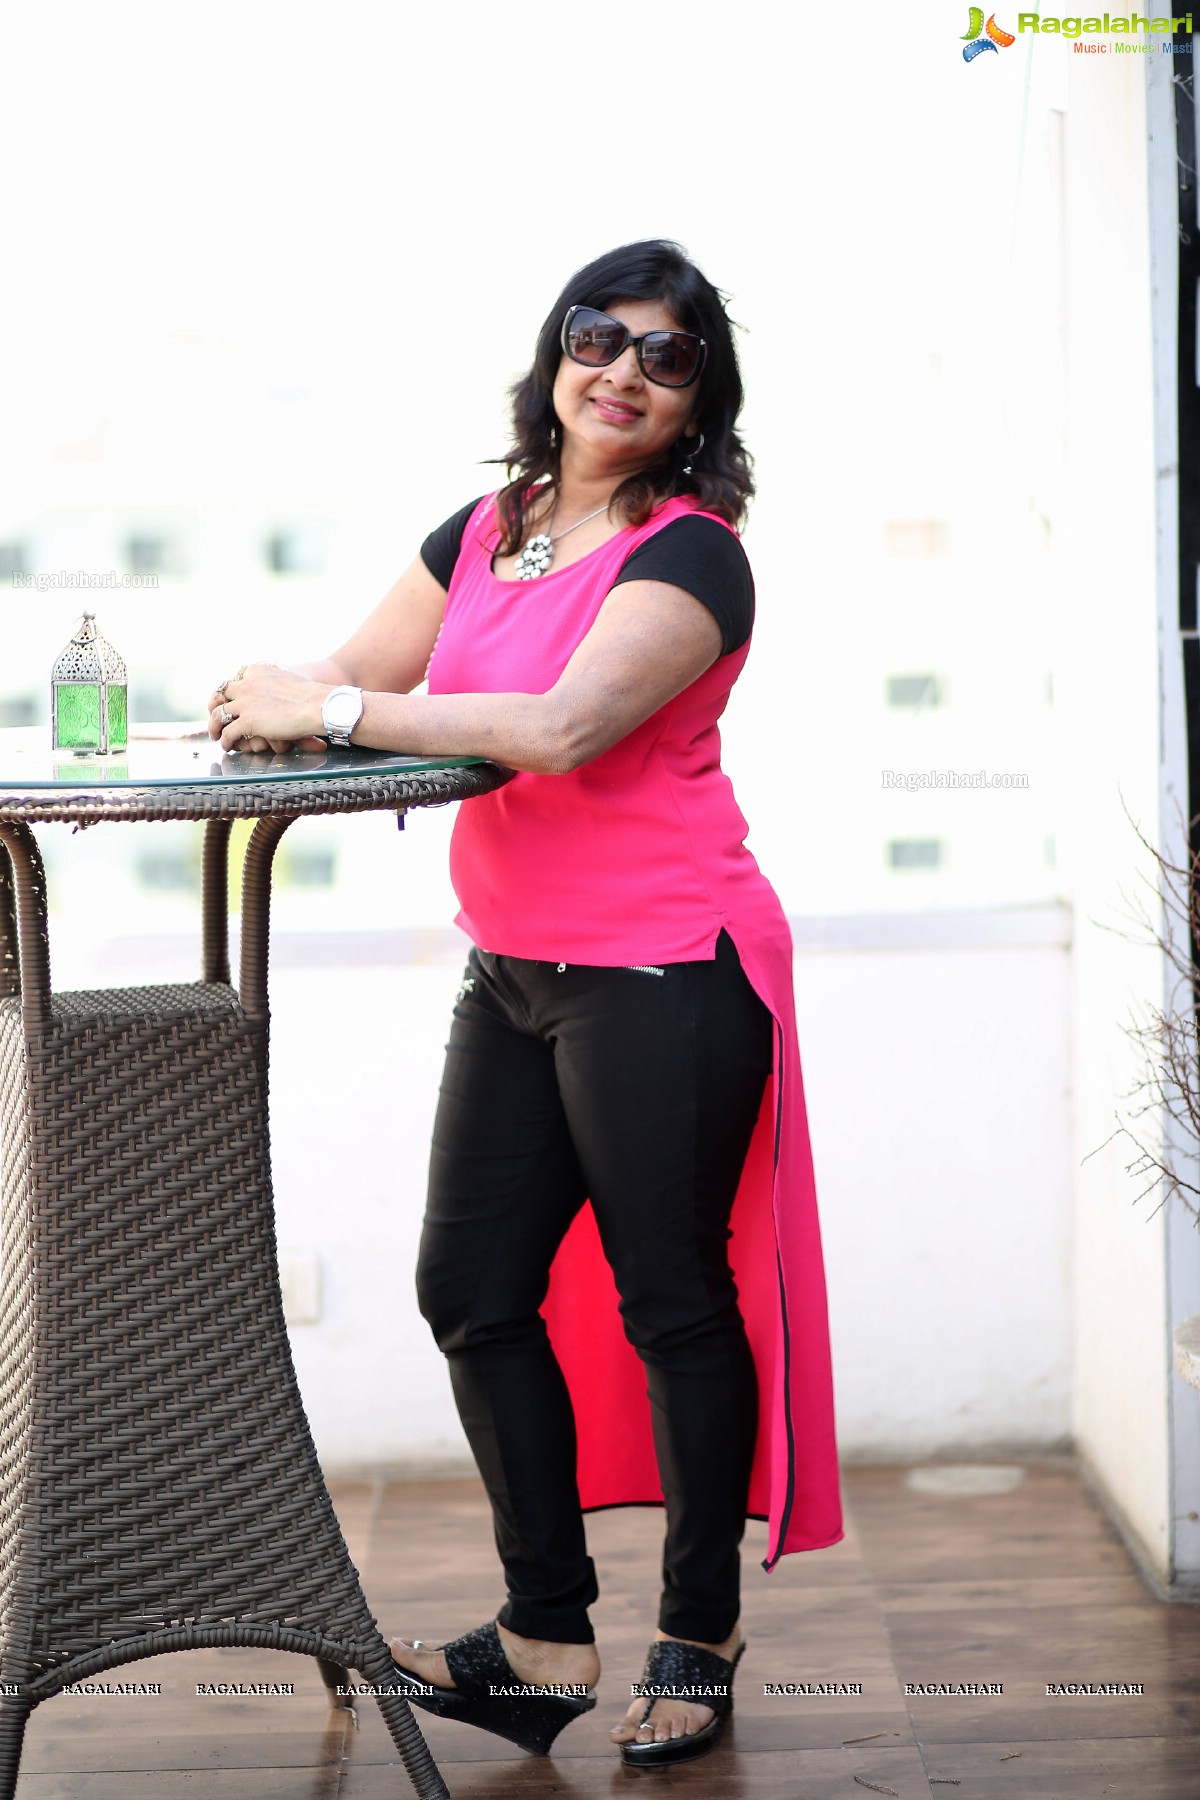 Queen Lounge Kitty Event at Vertigo, Hyderabad